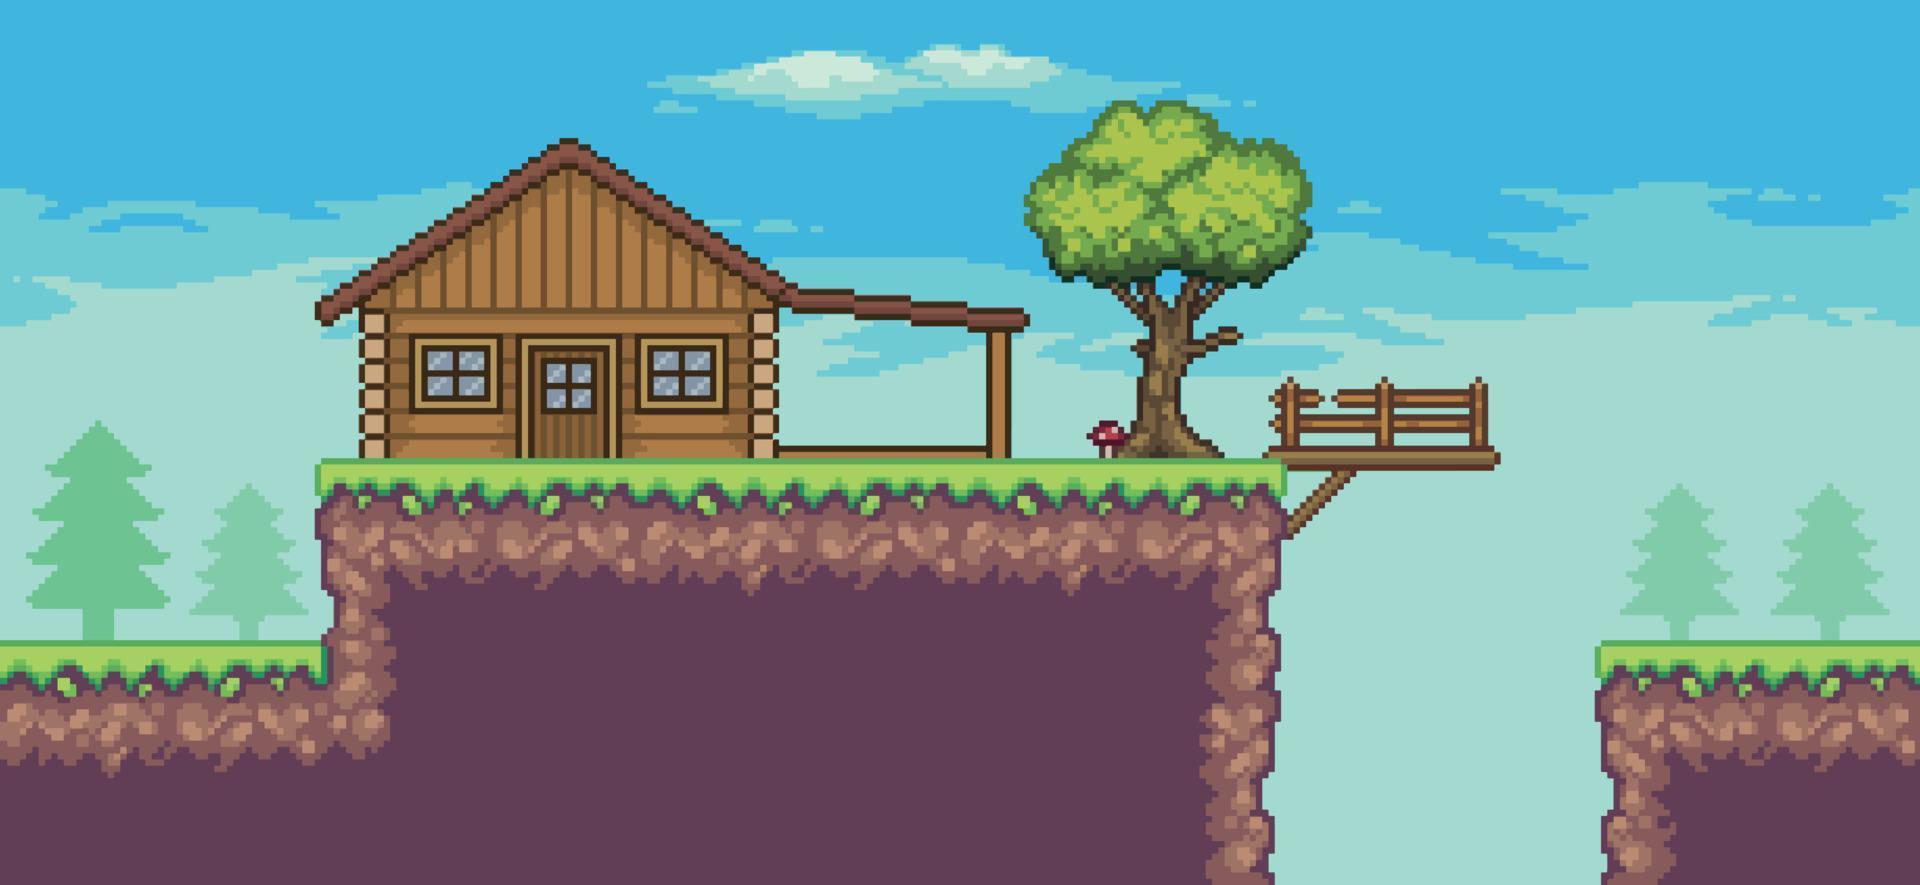 escena de juego de arcade de pixel art con casa de madera, árboles, cerca, puente y nubes fondo de 8 bits vector